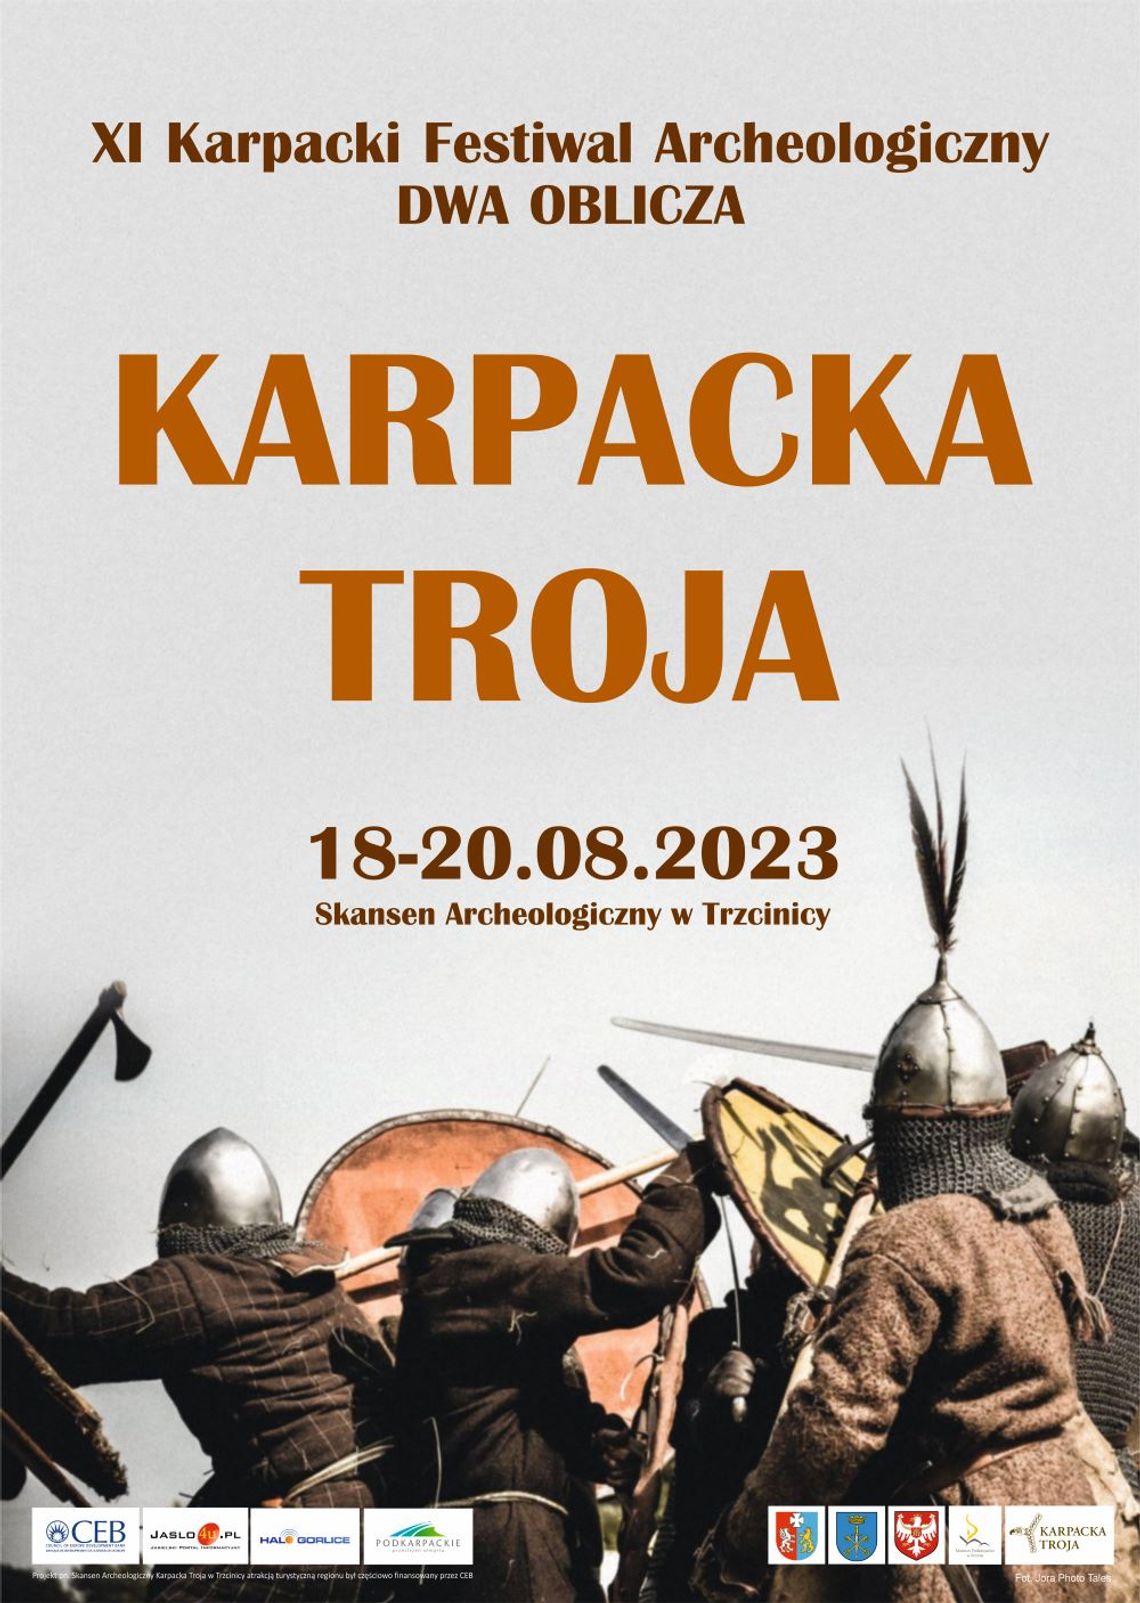 XI Karpacki Festiwal Archeologiczny „Dwa oblicza” – Karpacka Troja | halogorlice.info